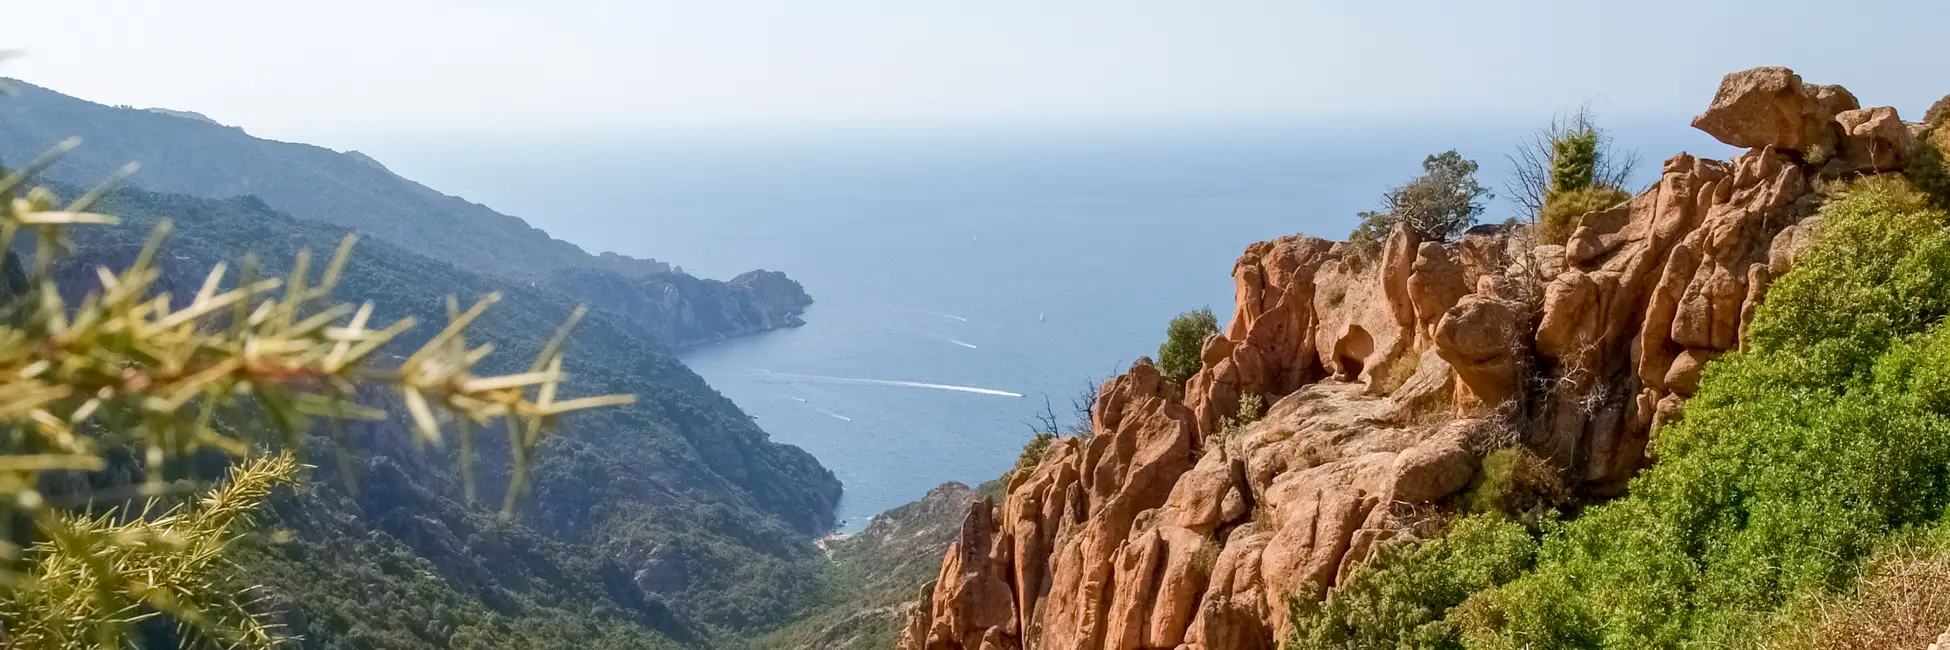 Les calanques de Piana en Corse 